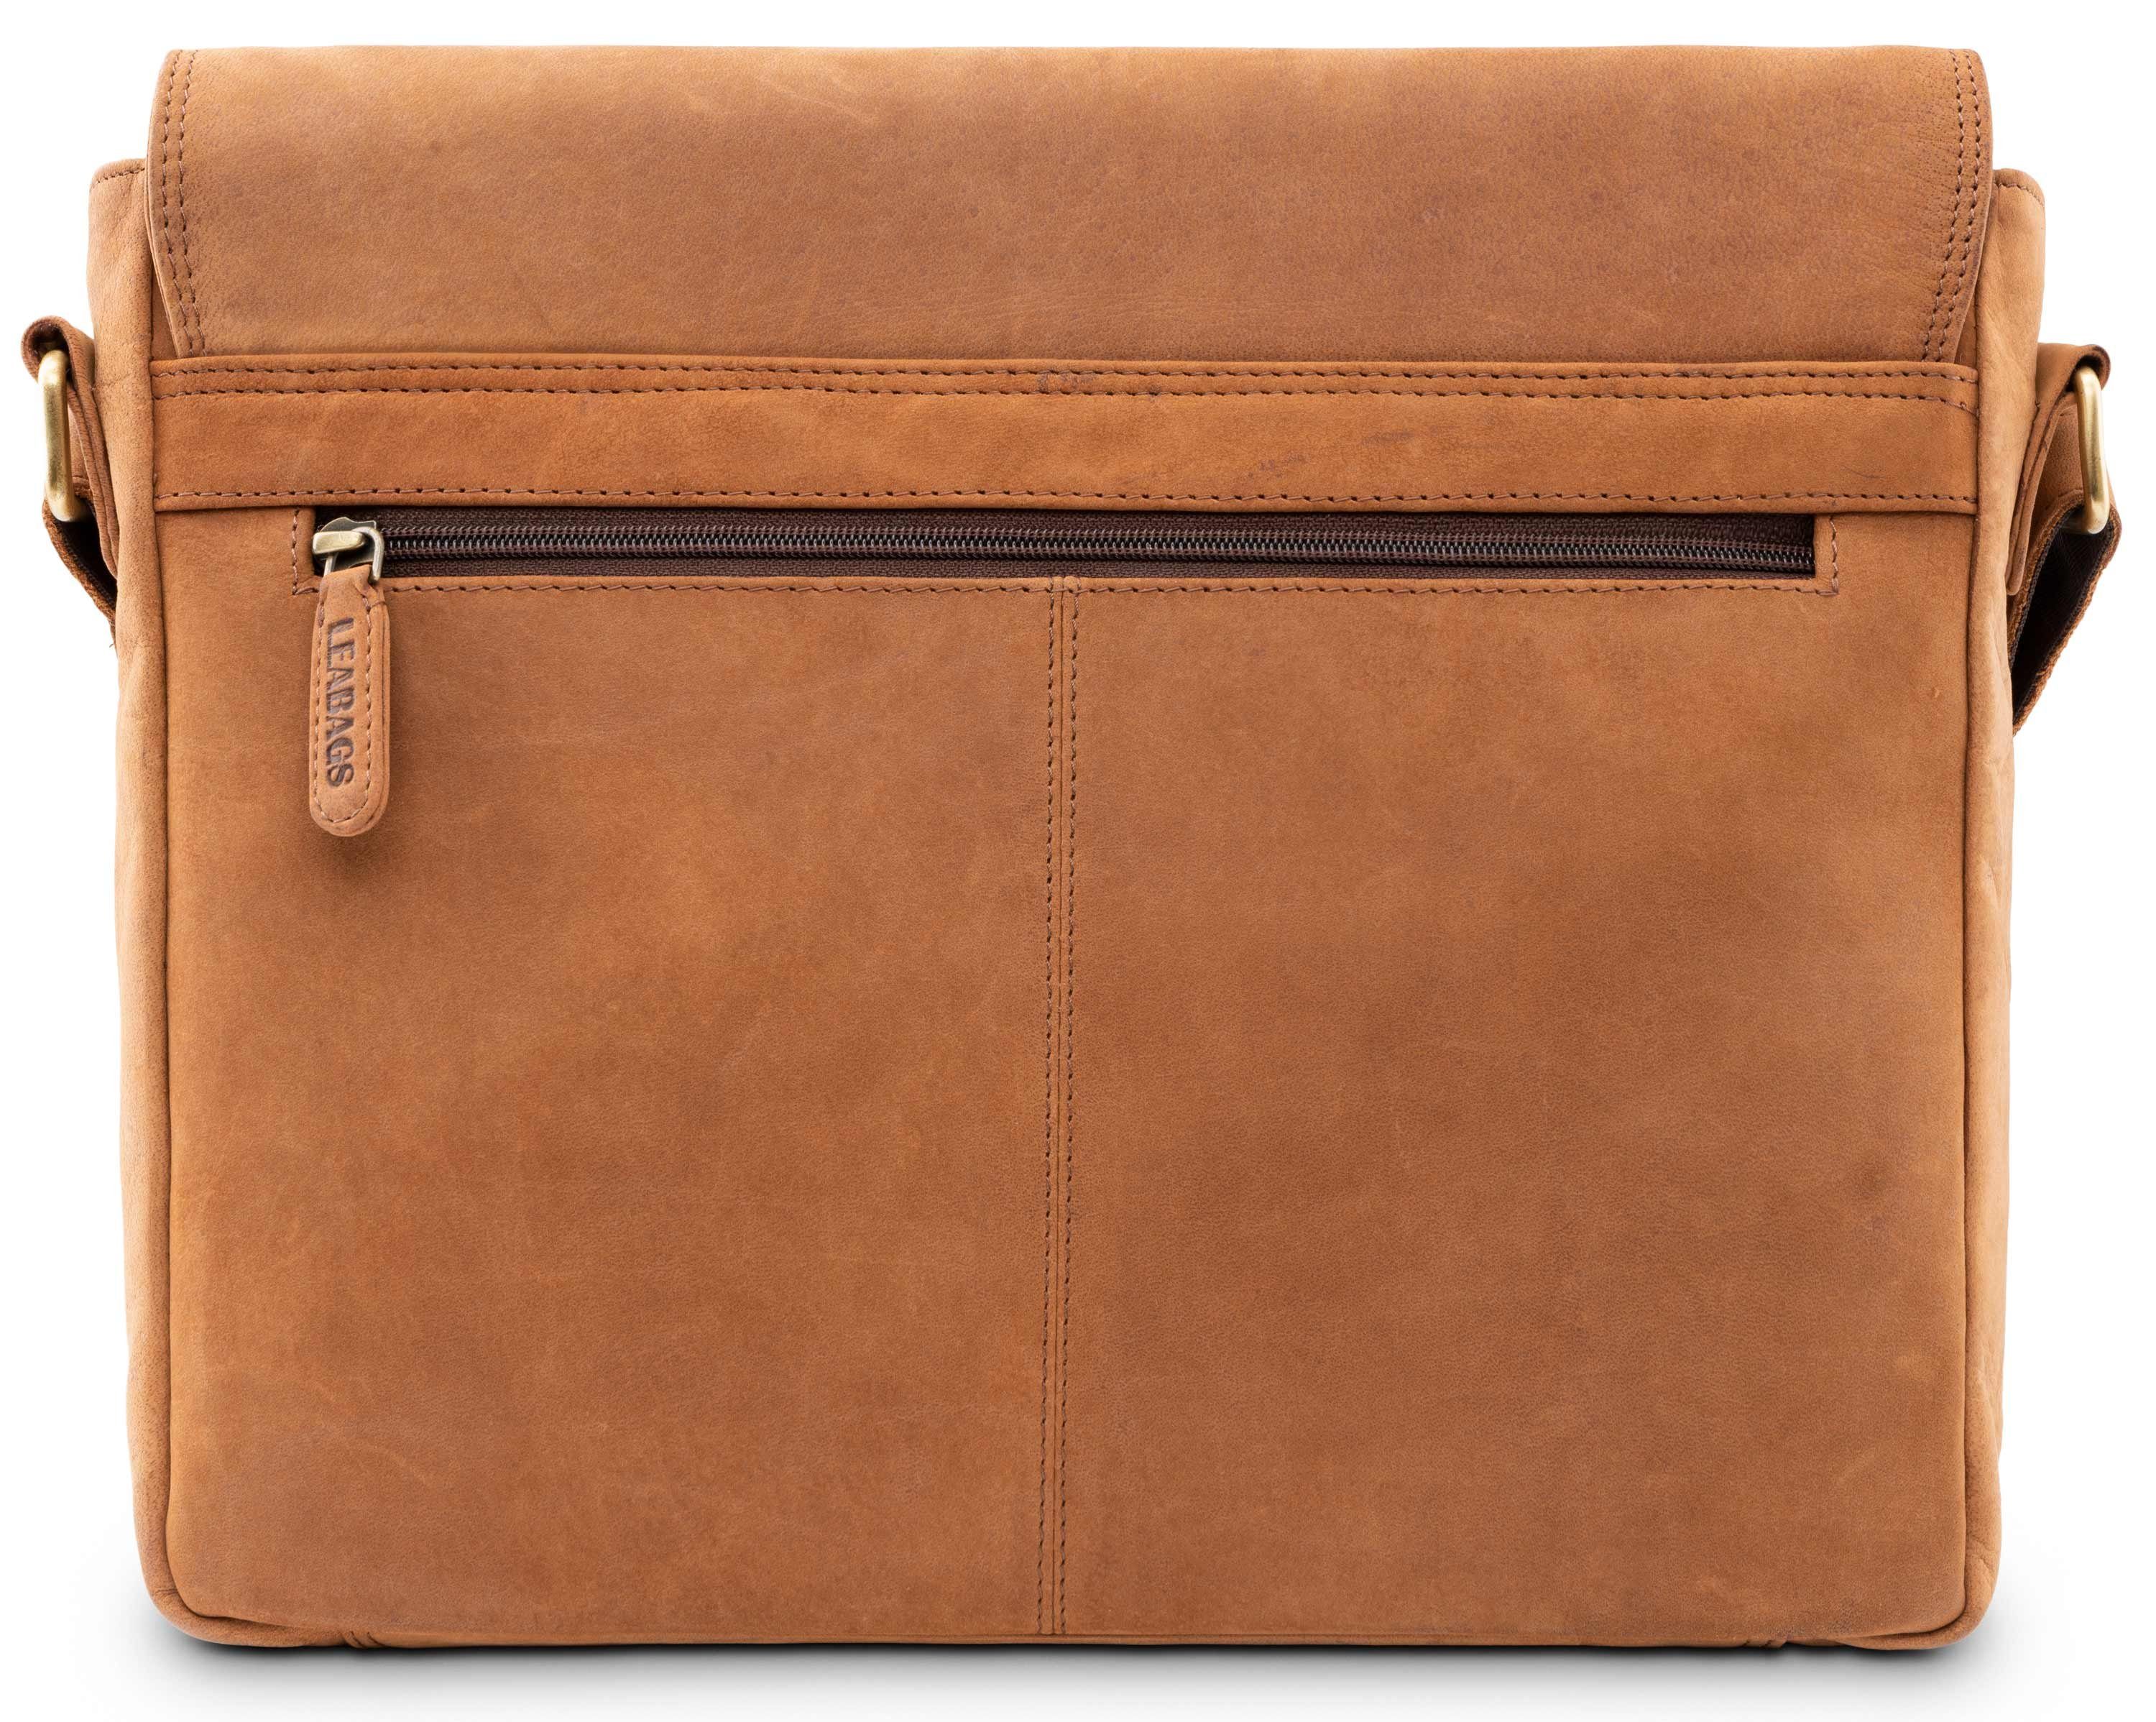 LEABAGS Manchester Schultertasche Laptoptasche 13 Zoll aus echtem Leder im Vintage Look Braun